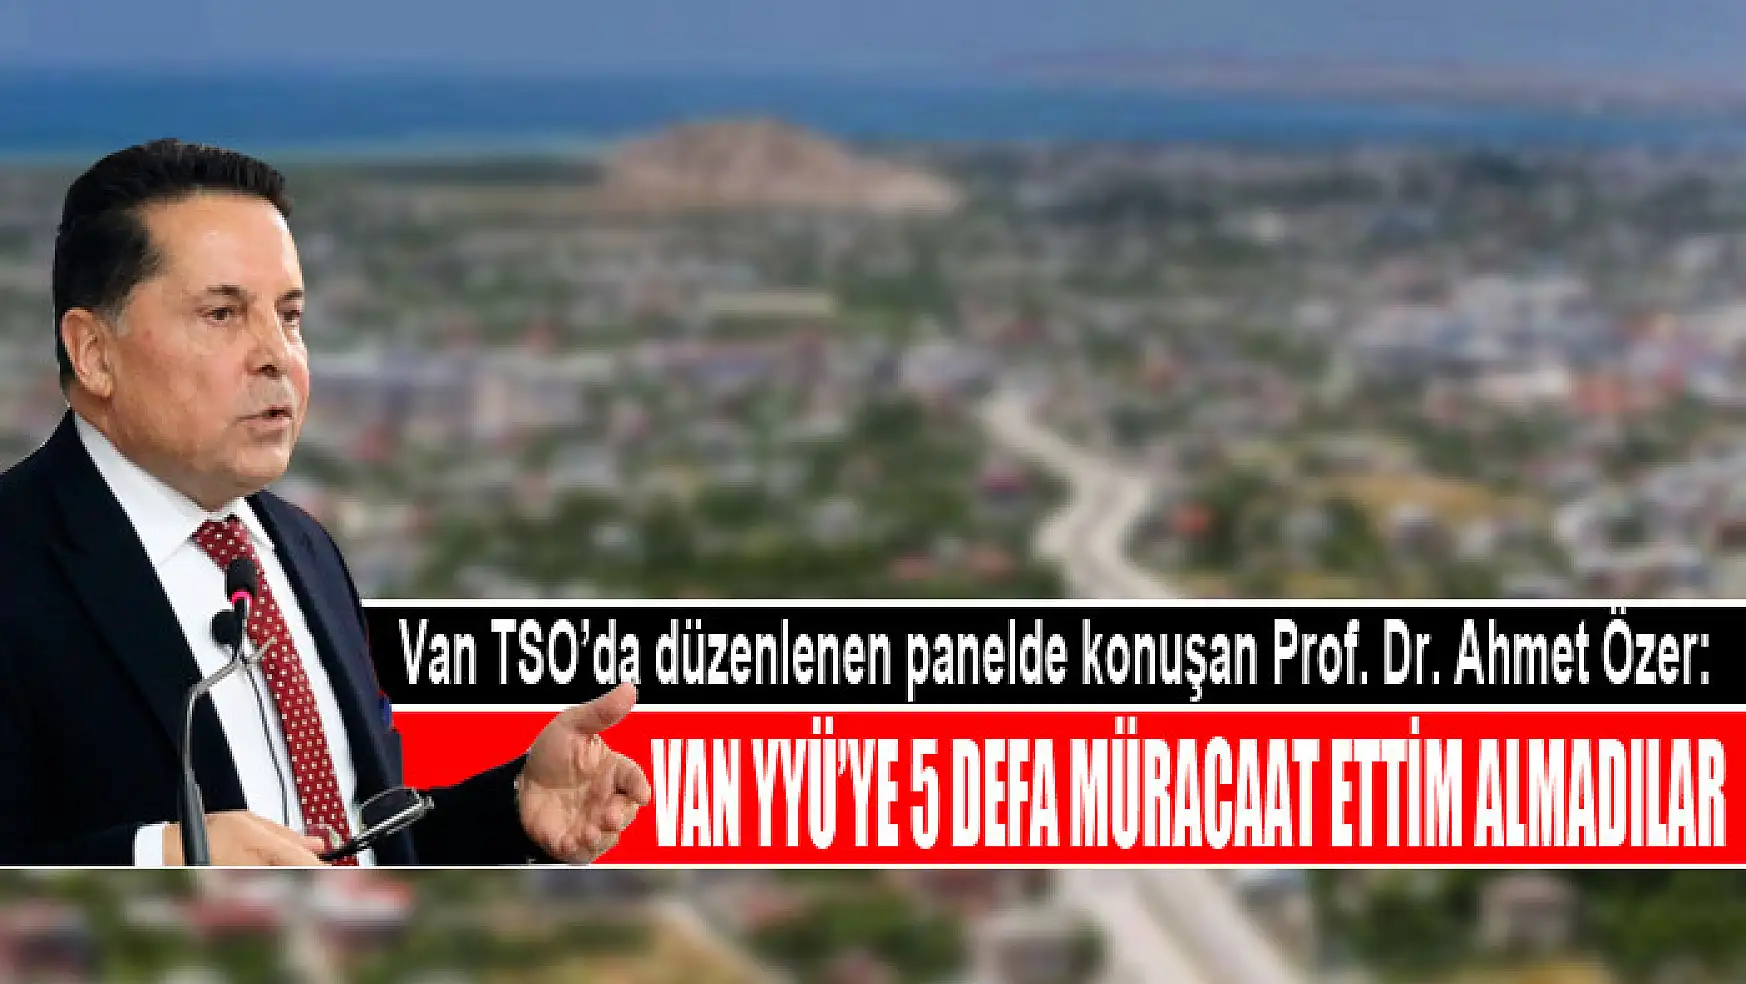 Van TSO'da düzenlenen panelde konuşan Prof. Dr. Ahmet Özer: Van YYÜ'ye 5 defa müracaat ettim almadılar